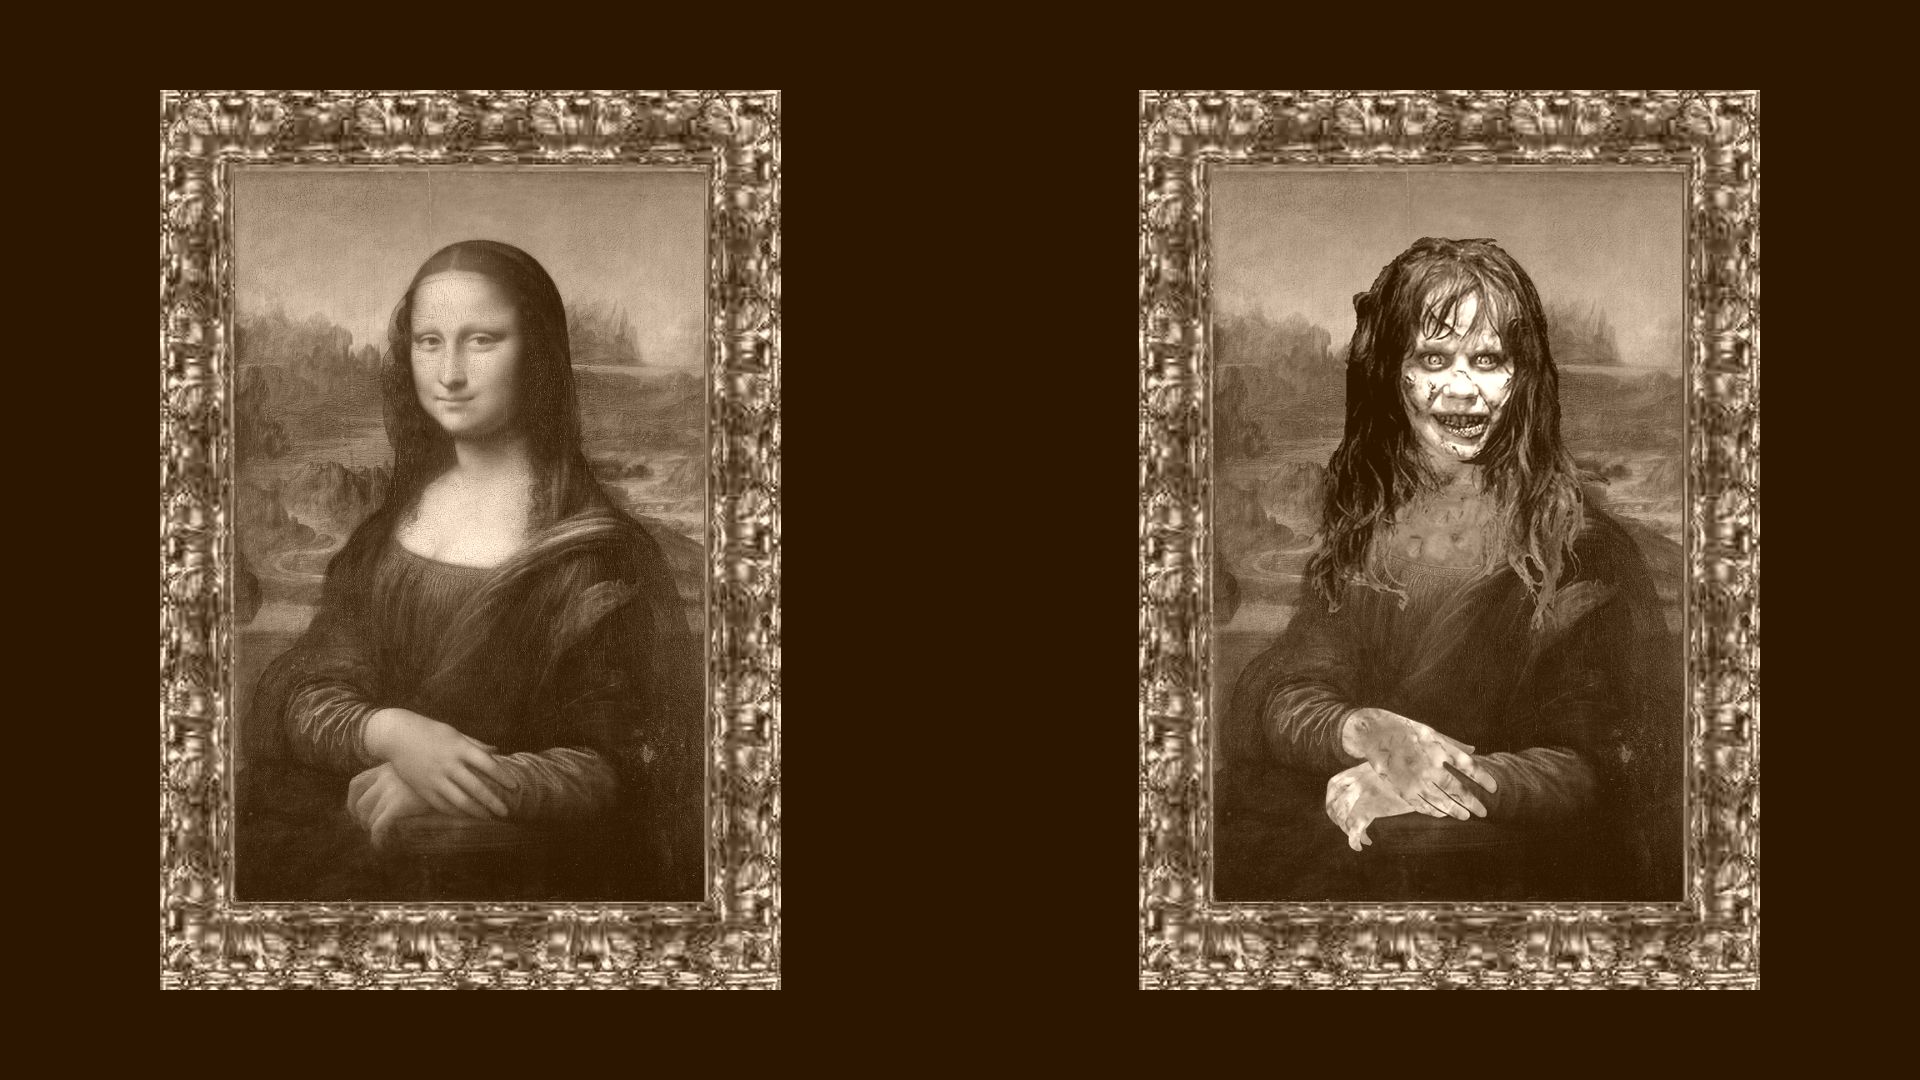 Mona Lisa wallpaper full hd - The Exorcist Wallpaper (34552532 ...